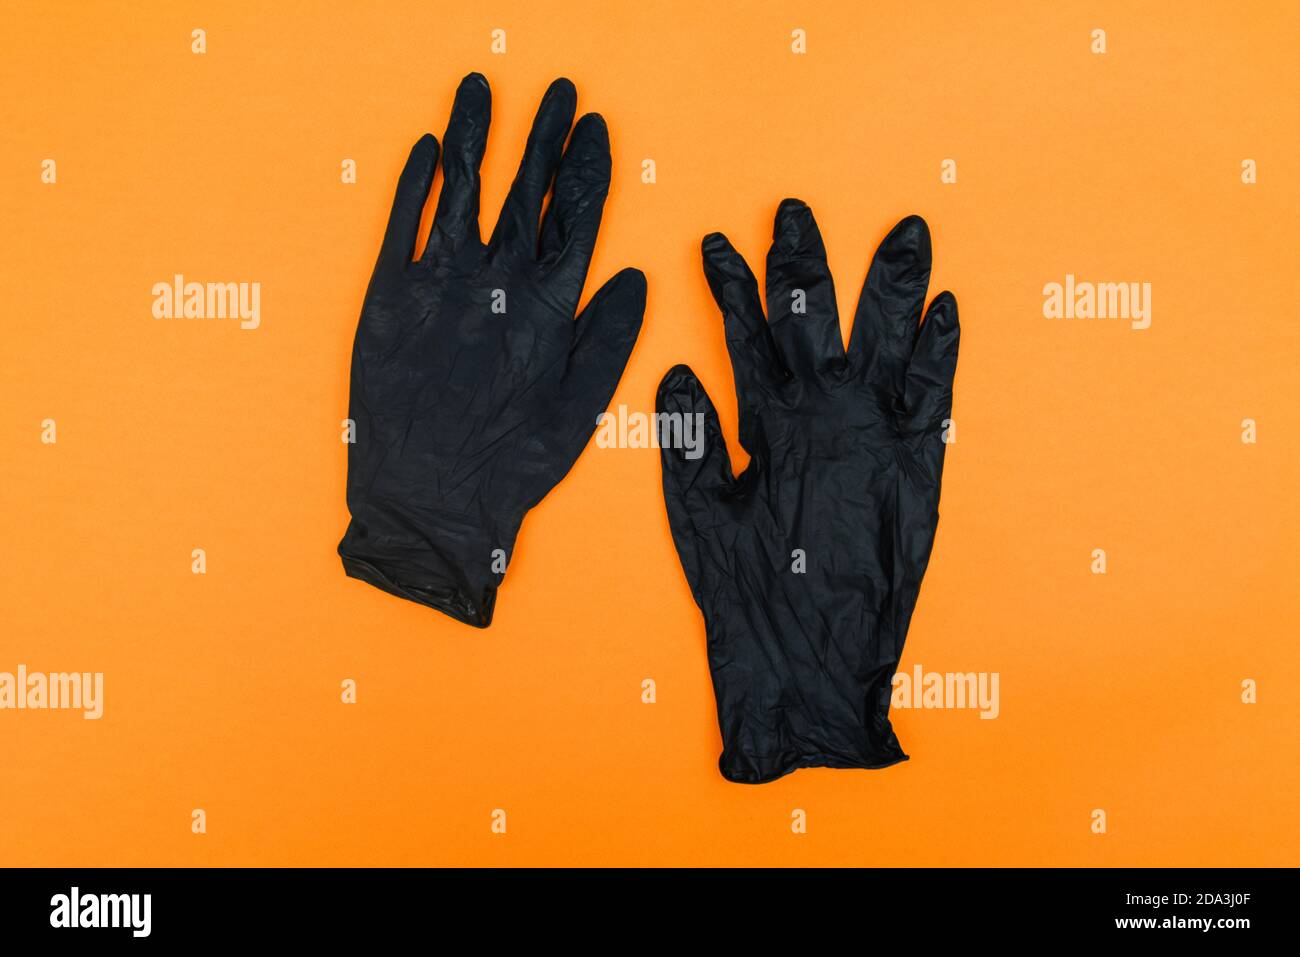 Donna con i guanti neri fotografia stock. Immagine di modo - 49338850